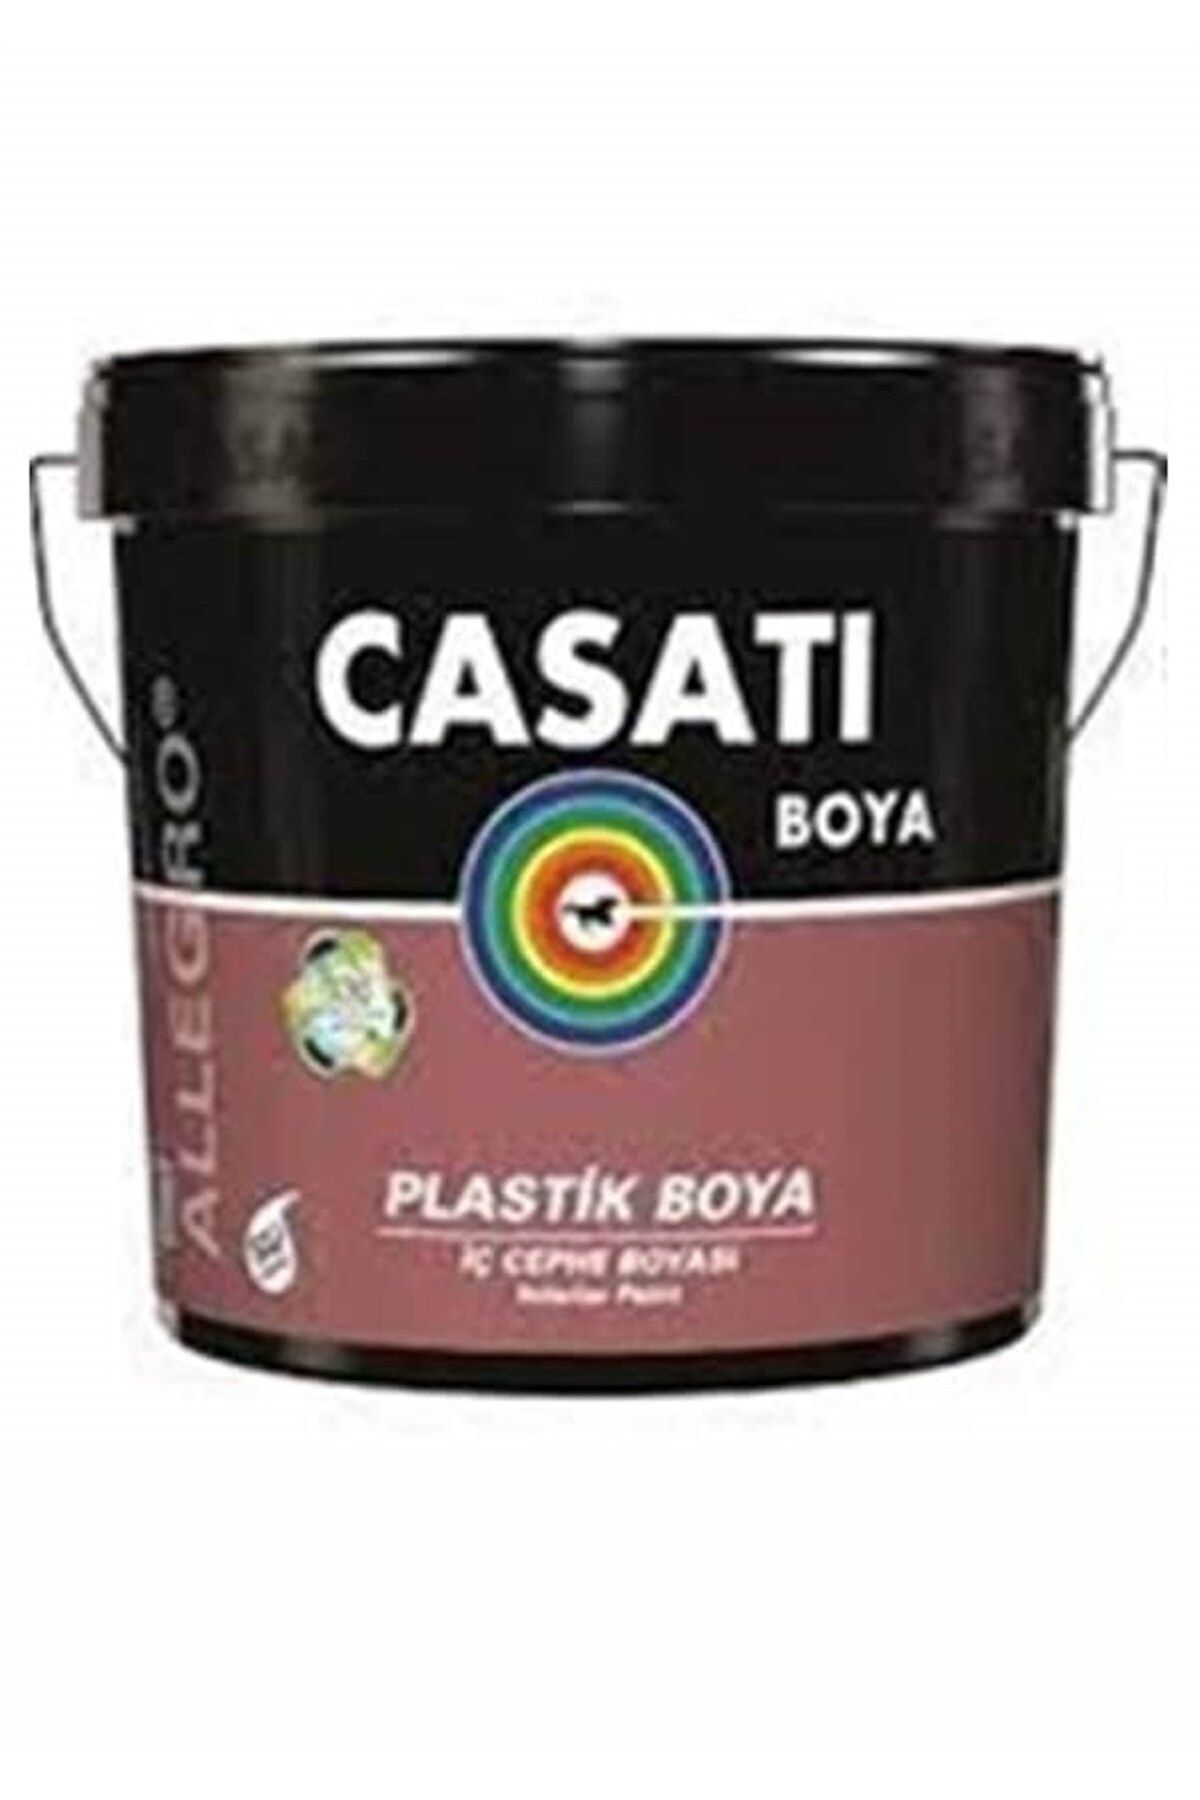 Casati Dyo Casati Allegro Plastik Iç Cephe Duvar Boyası 3.5 Kg Tüm Renkler Mevcuttur